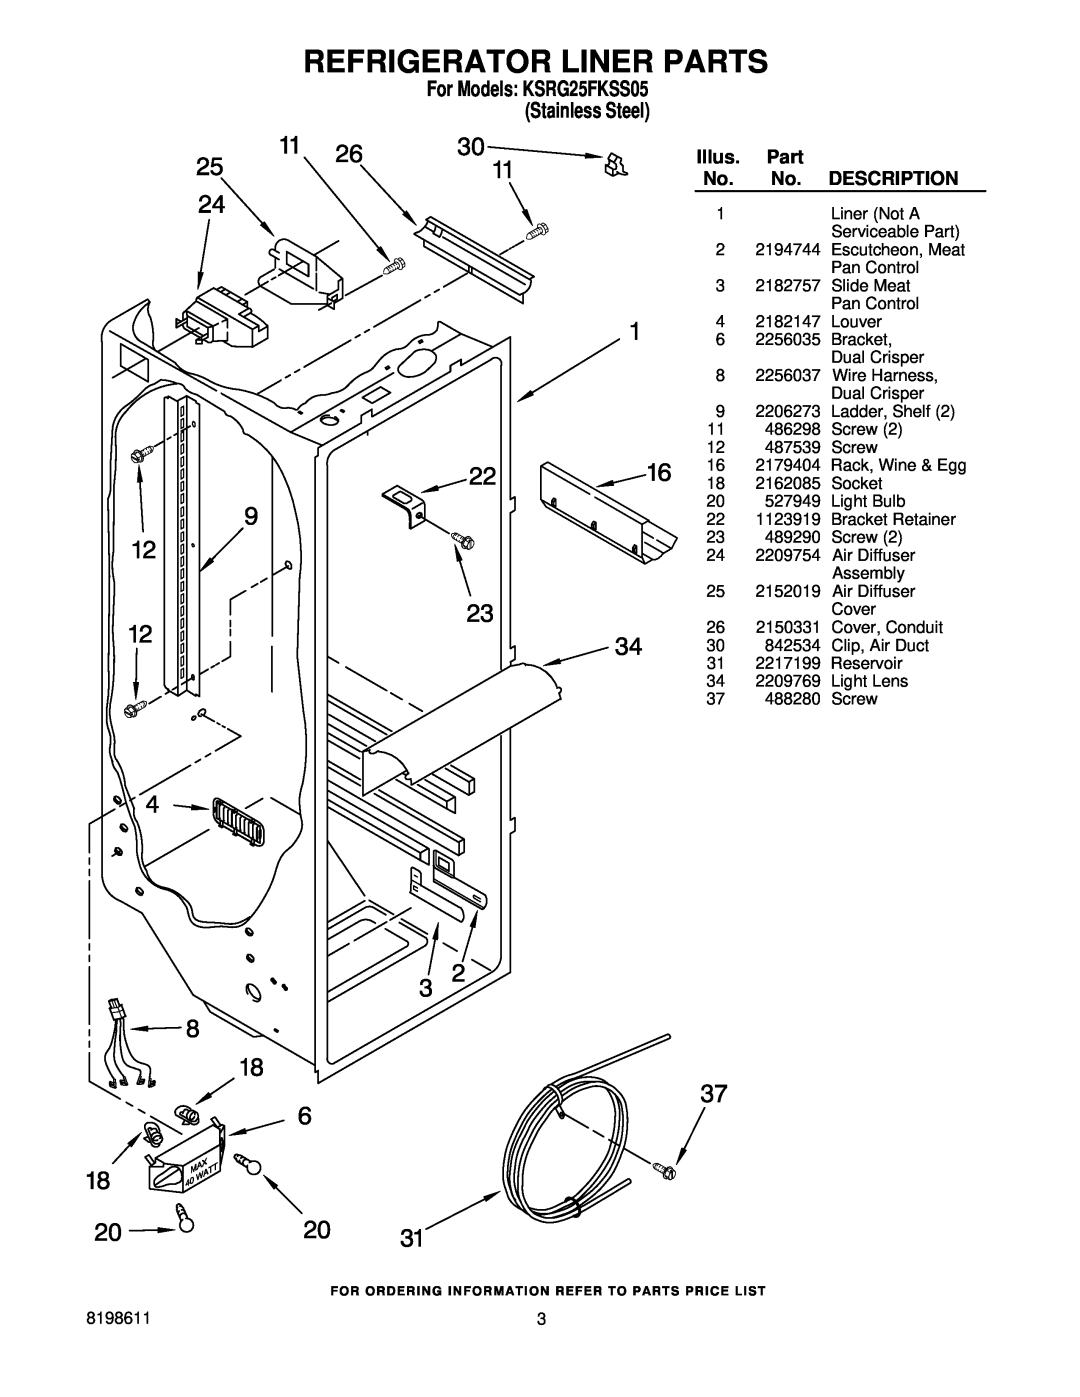 KitchenAid ksrg25fkss05 manual Refrigerator Liner Parts, For Models KSRG25FKSS05 Stainless Steel, Illus, Description 